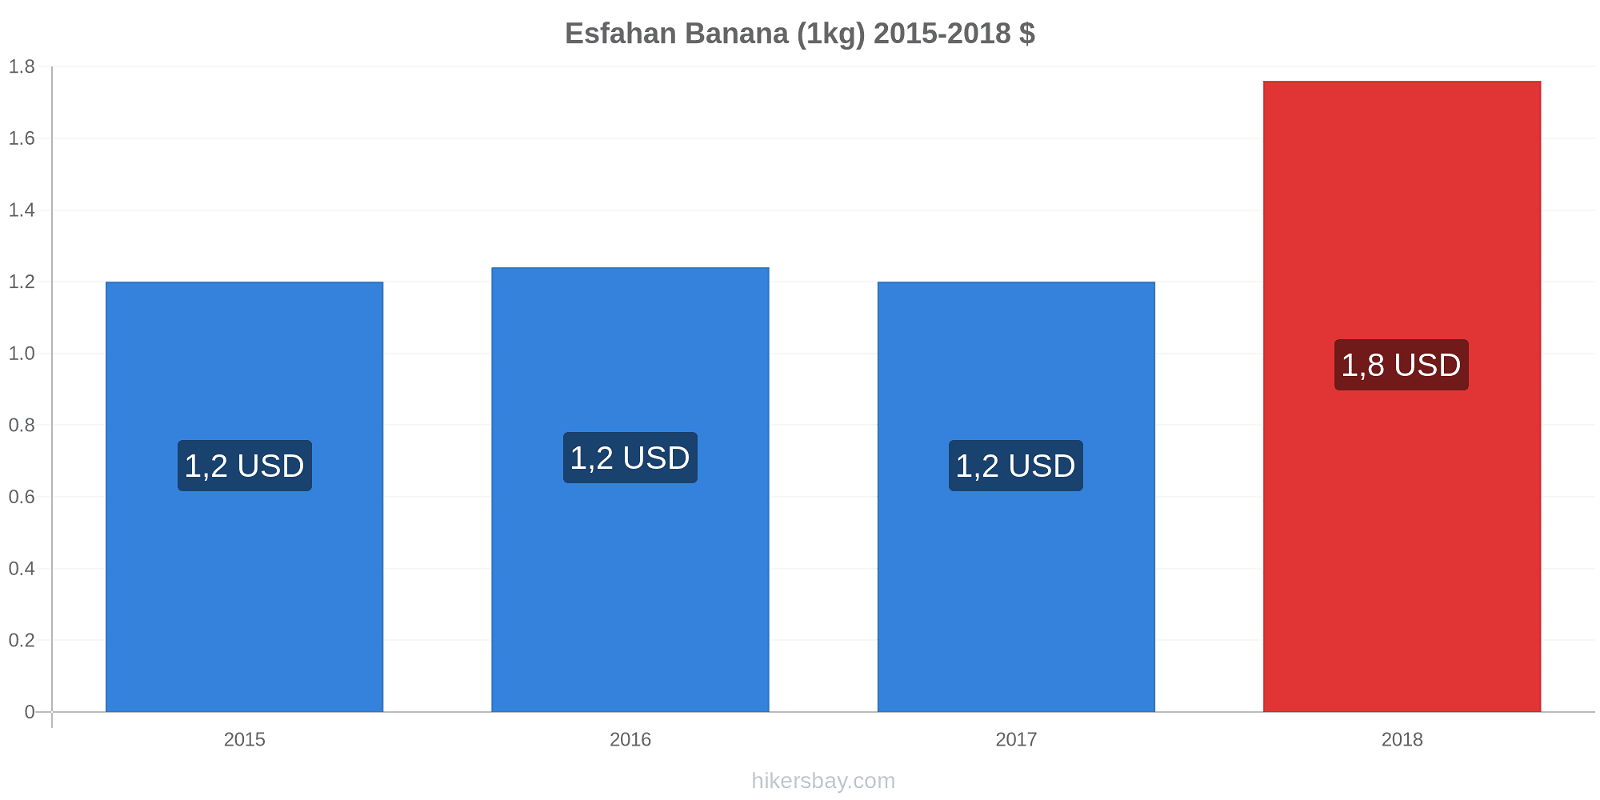 Esfahan variazioni di prezzo Banana (1kg) hikersbay.com